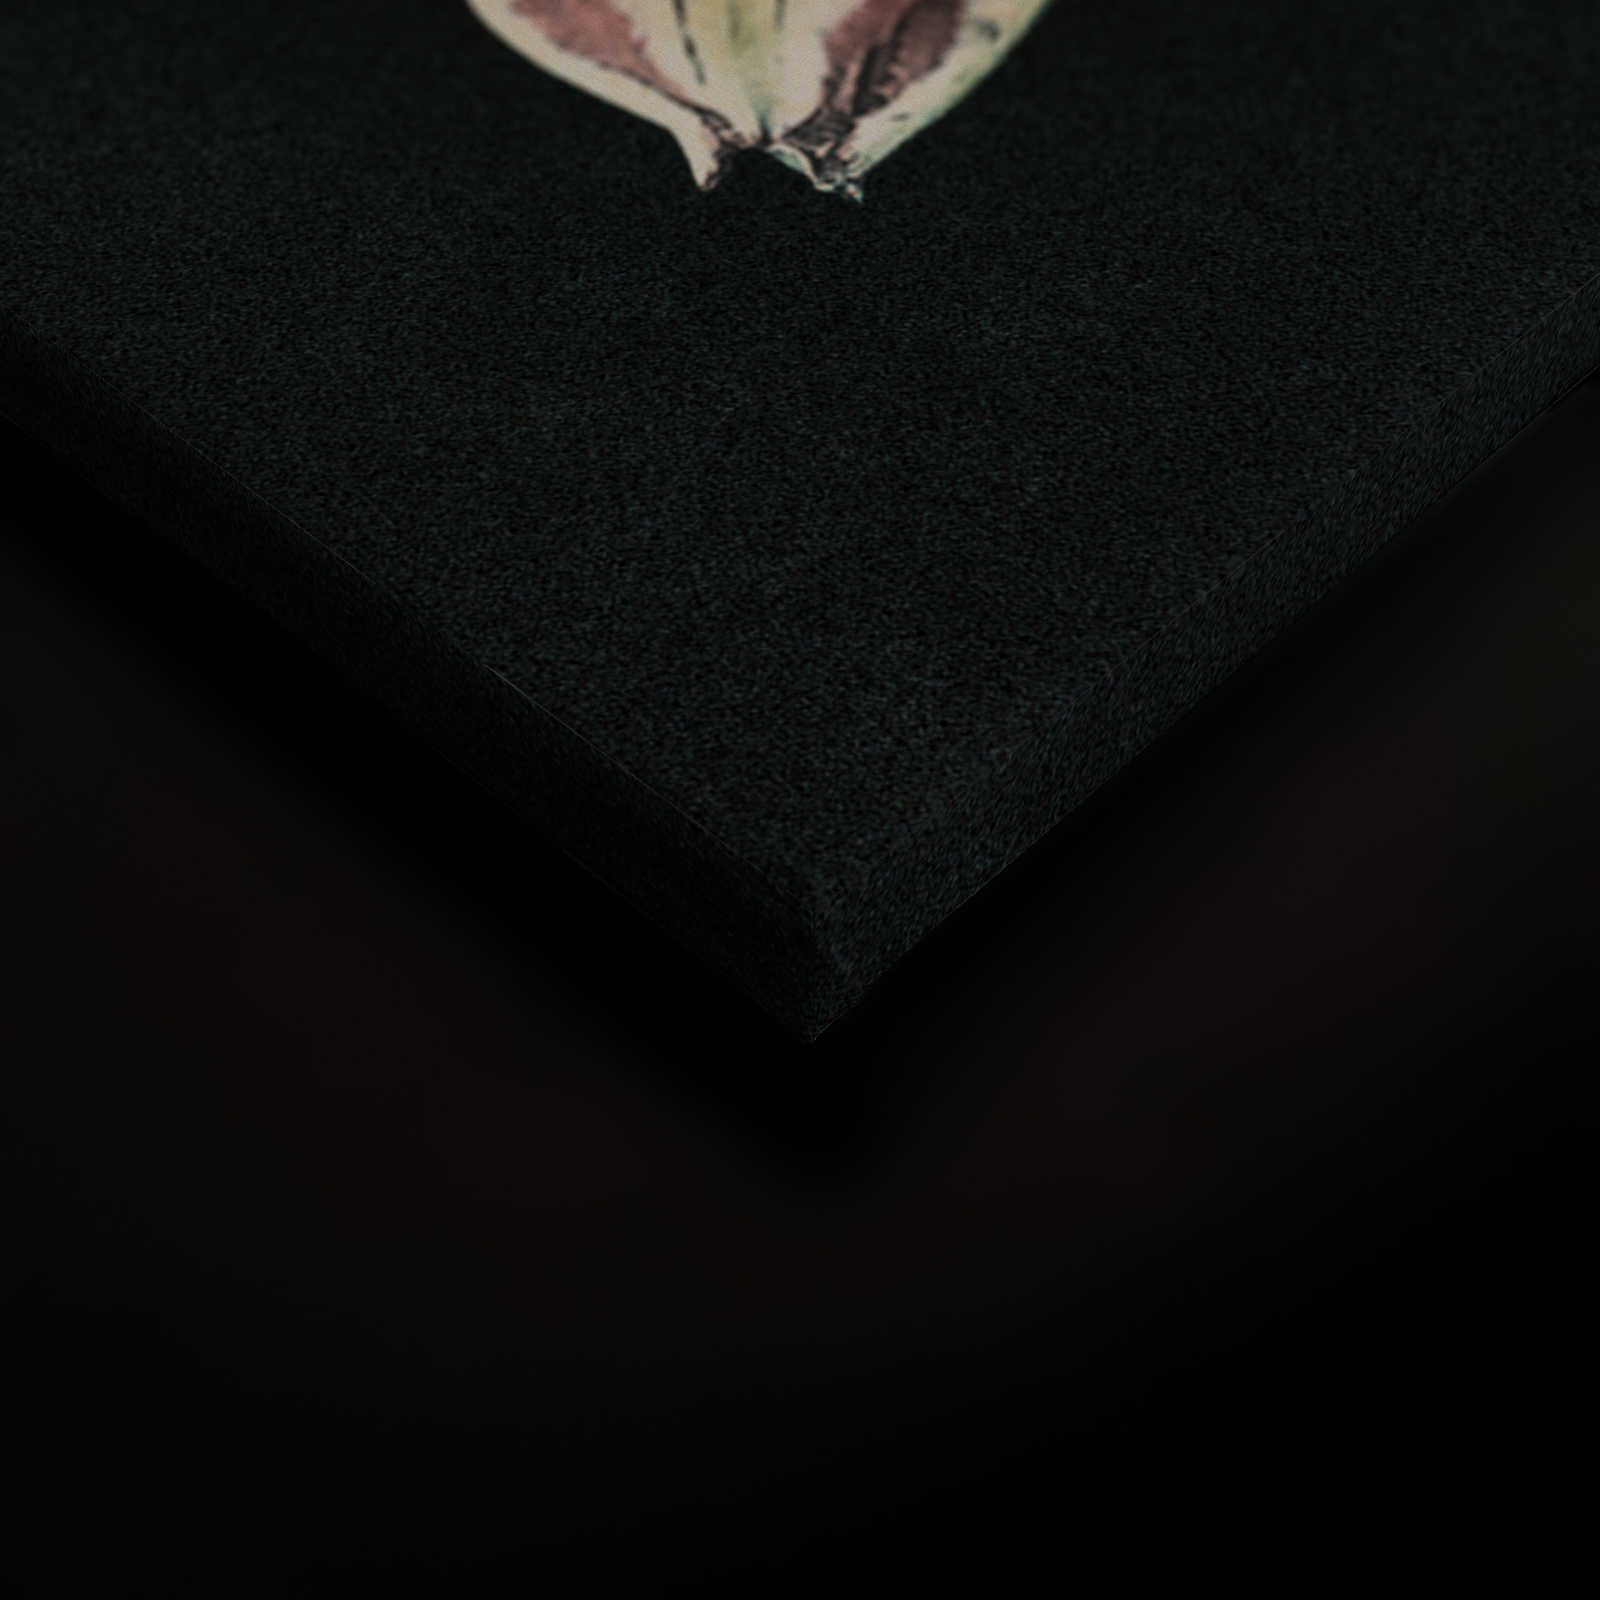             Drama queen 1 - Bouquet de fleurs Tableau sur toile avec fond sombre en structure de carton - 0,90 m x 0,60 m
        